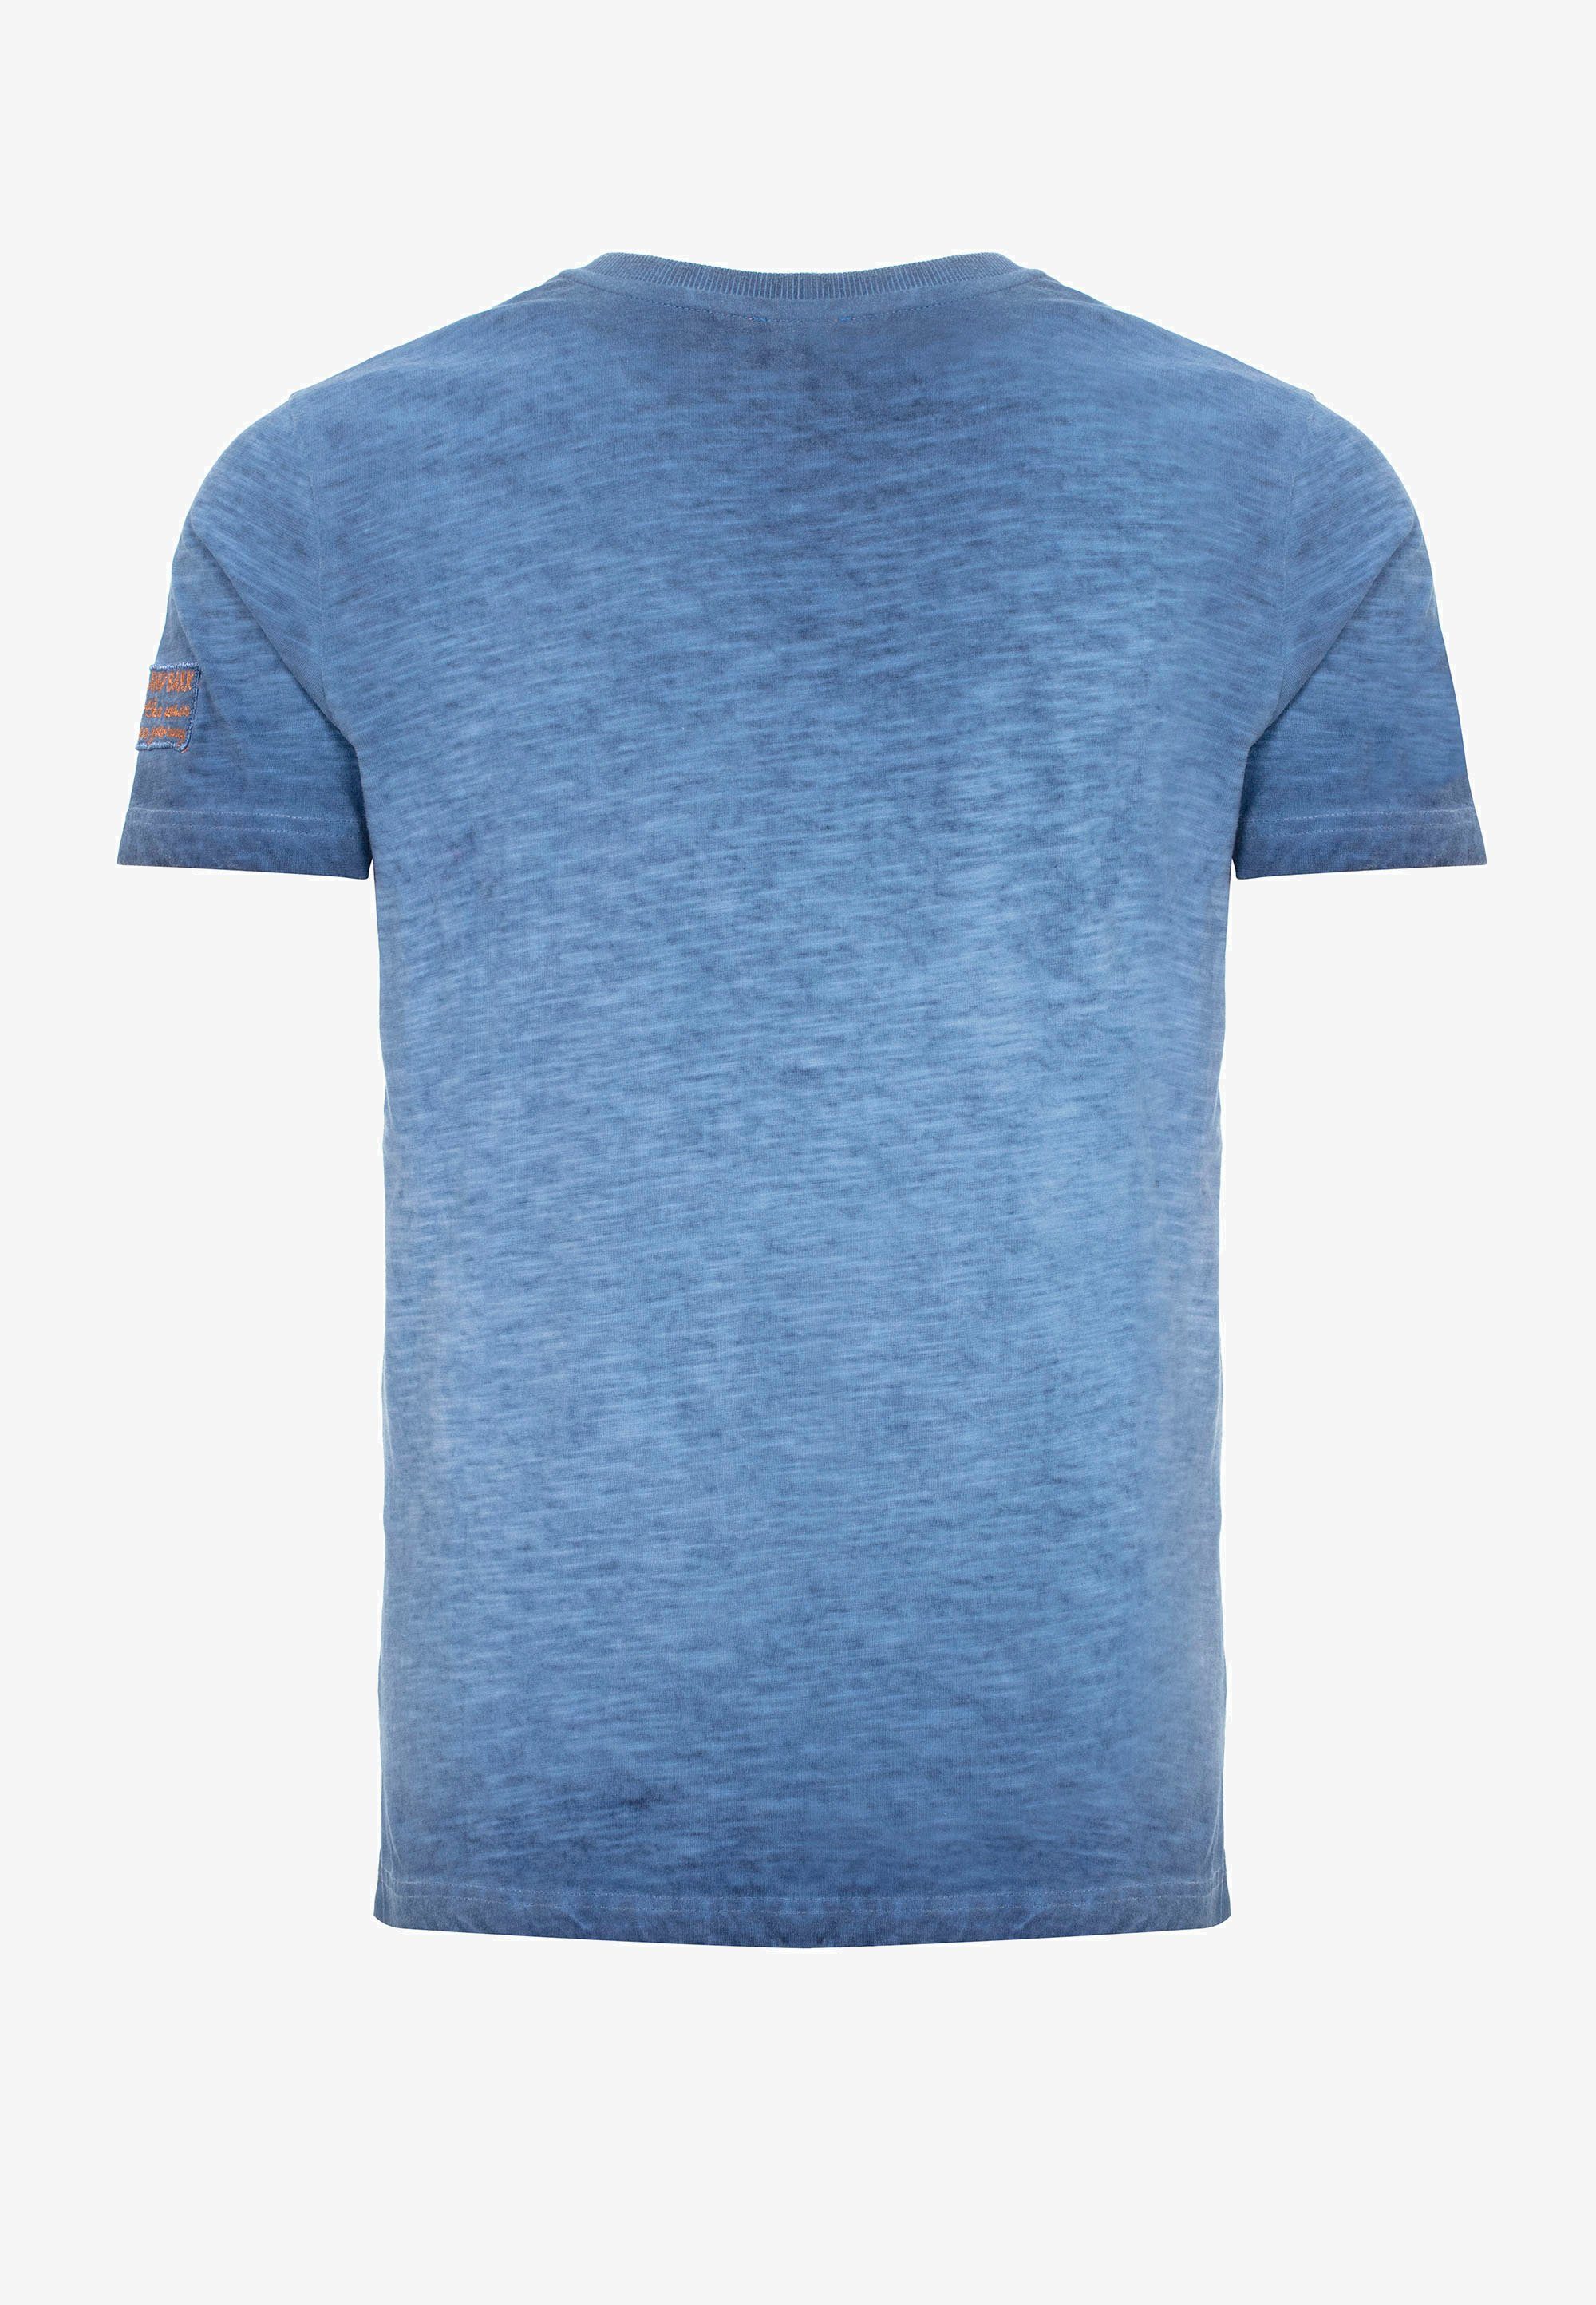 Cipo & kleinem indigo Logo-Patch T-Shirt mit Baxx